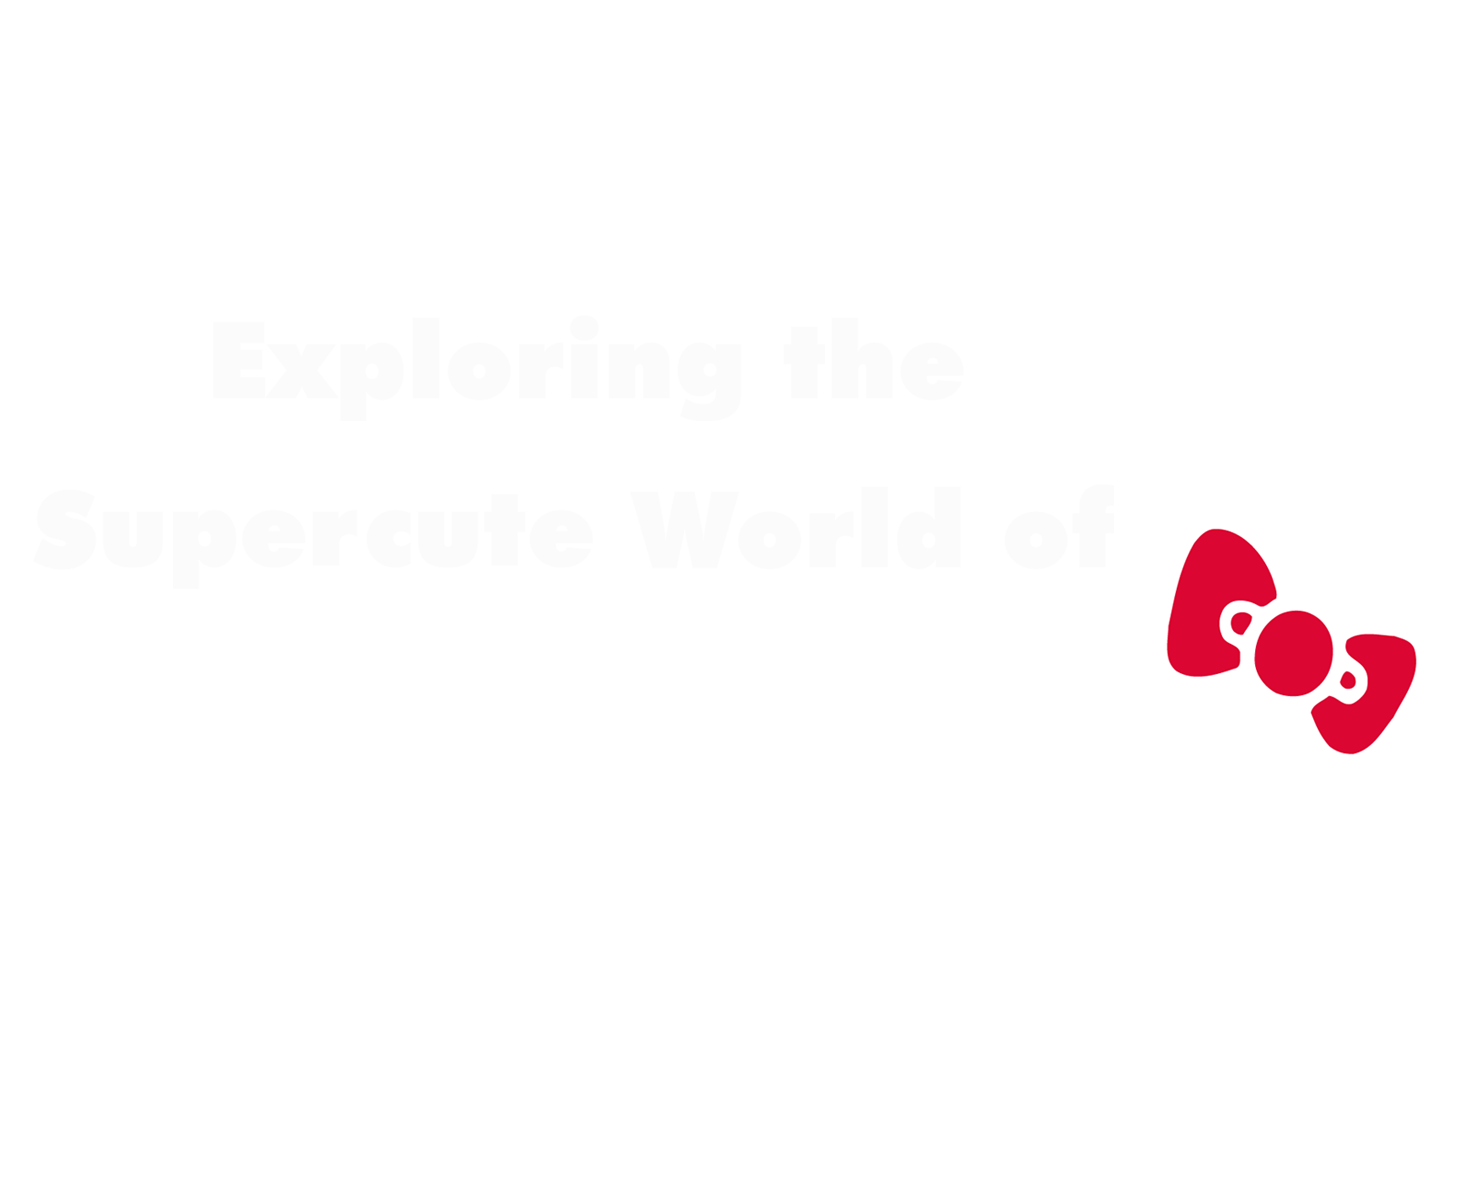 Hello Kitty World Wallpaper